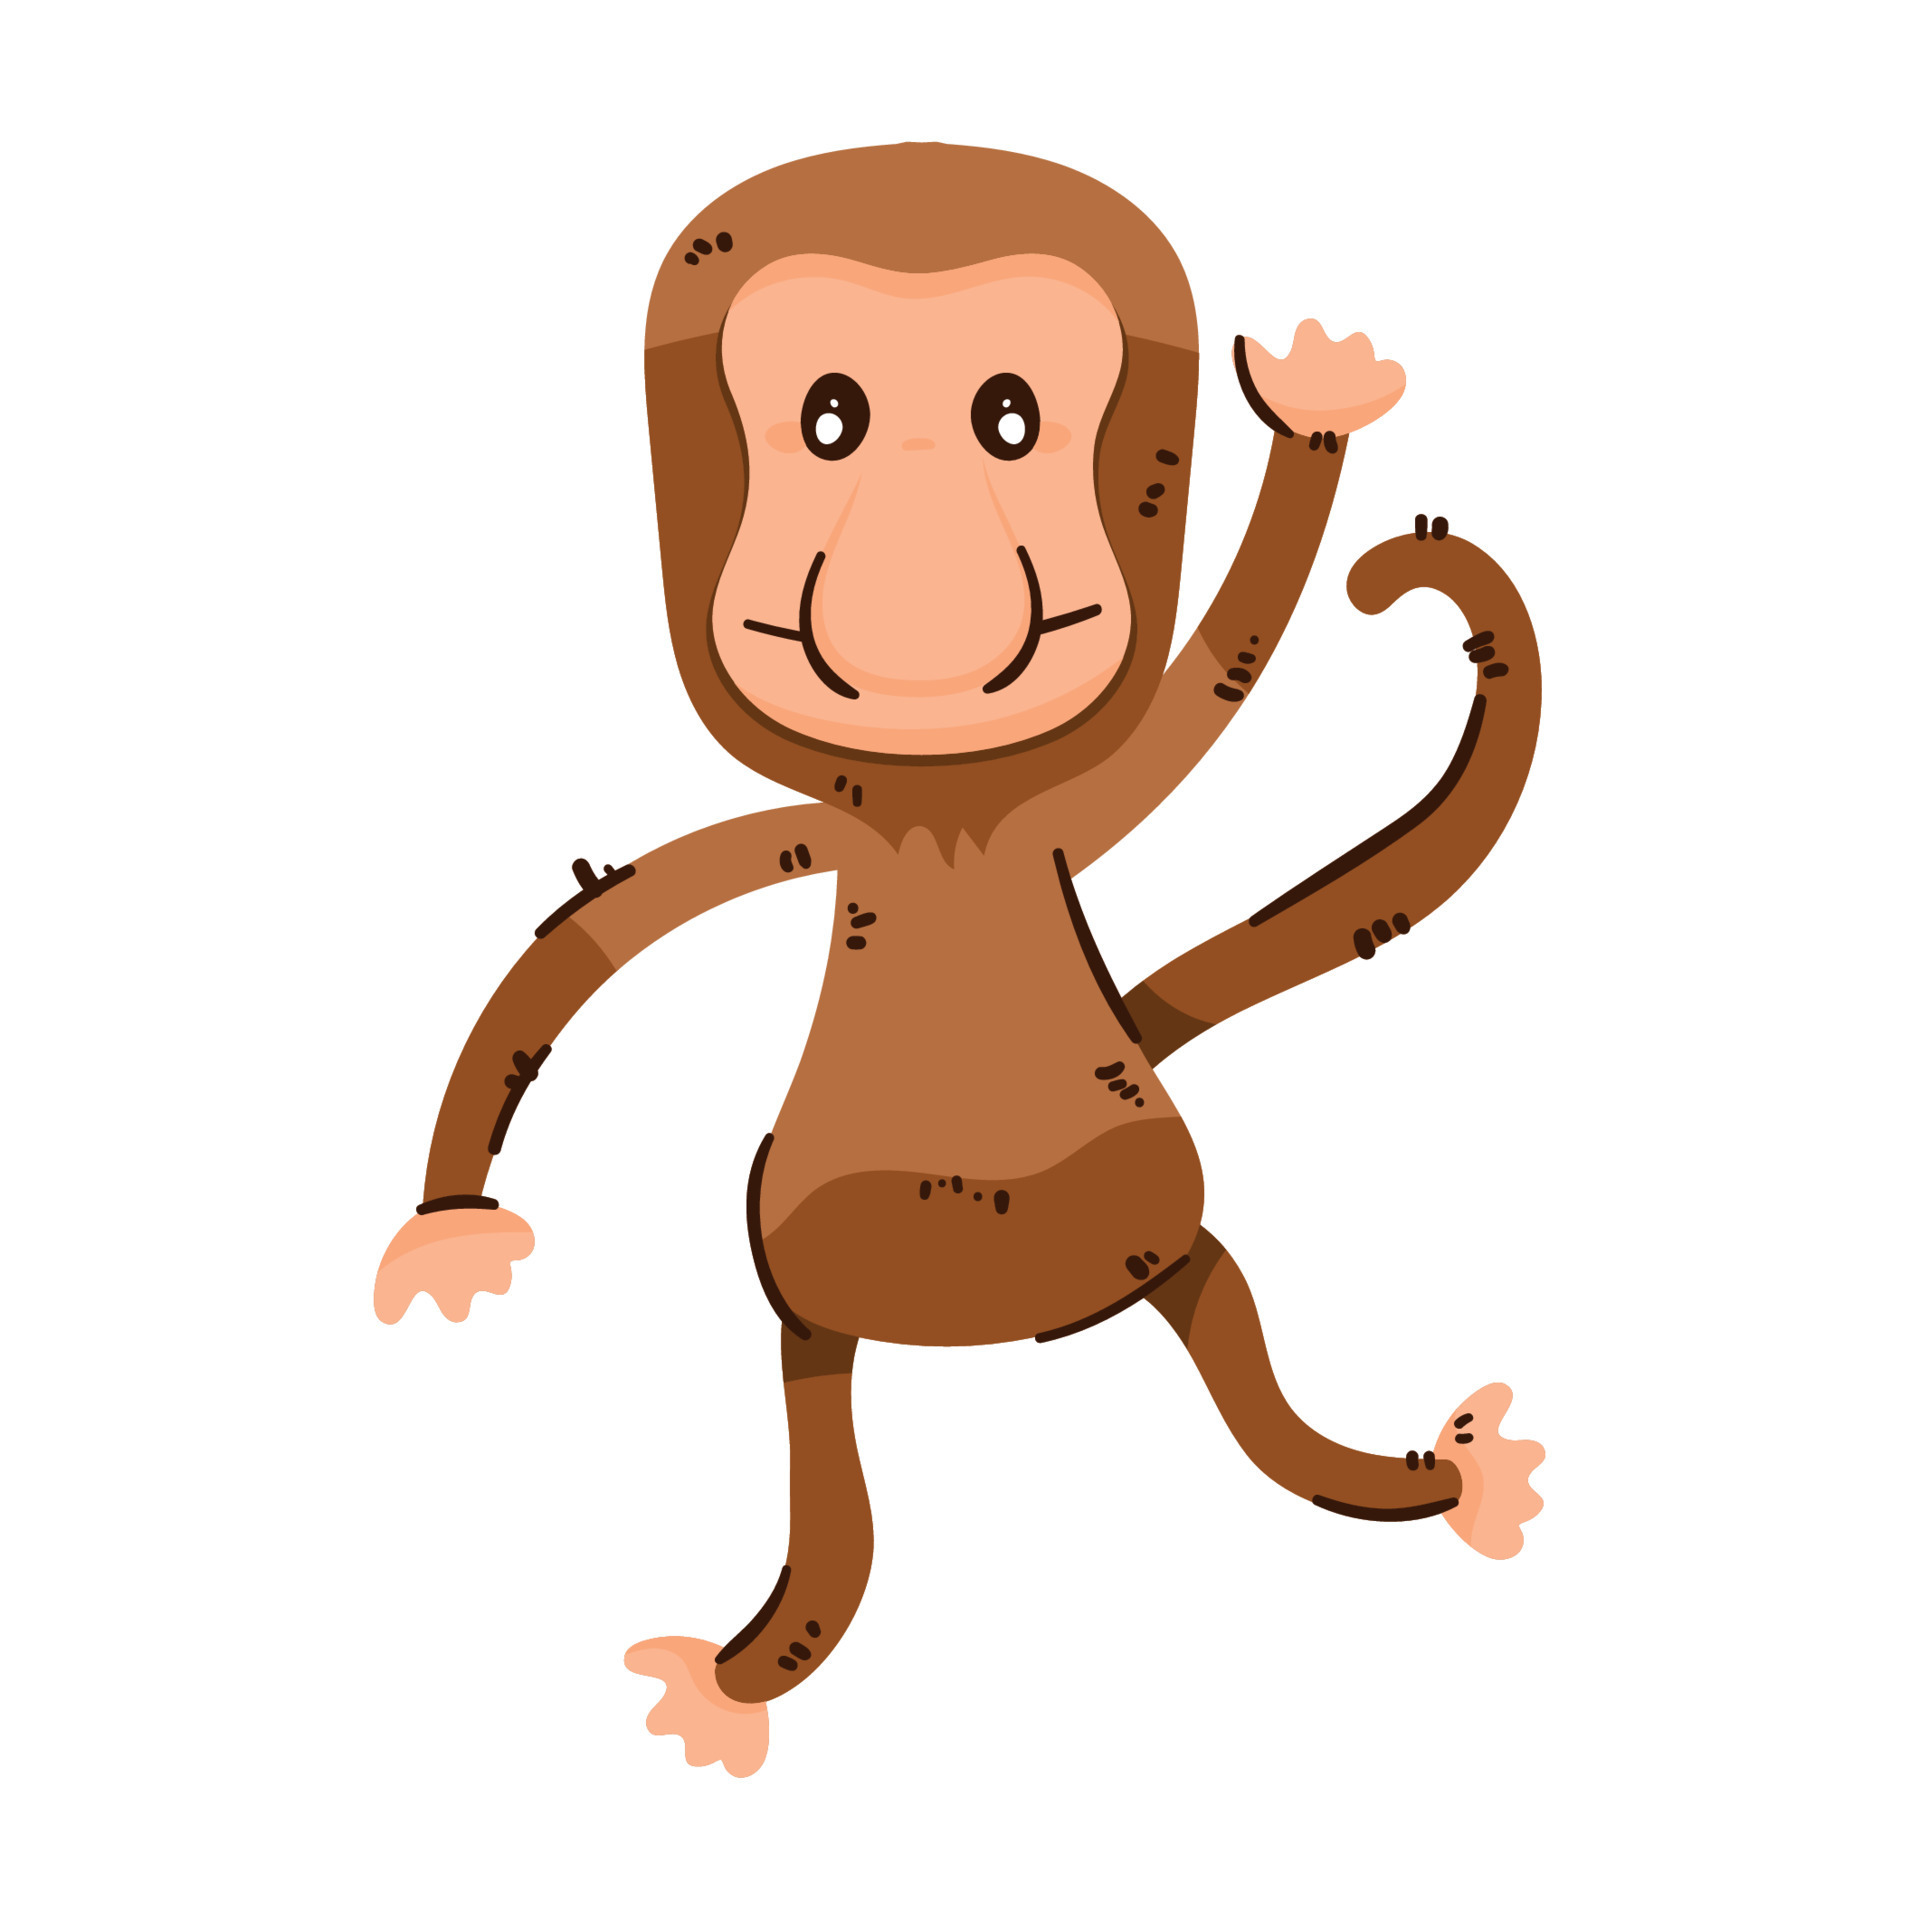 proboscis monkey jumping 11439228 Vector Art at Vecteezy